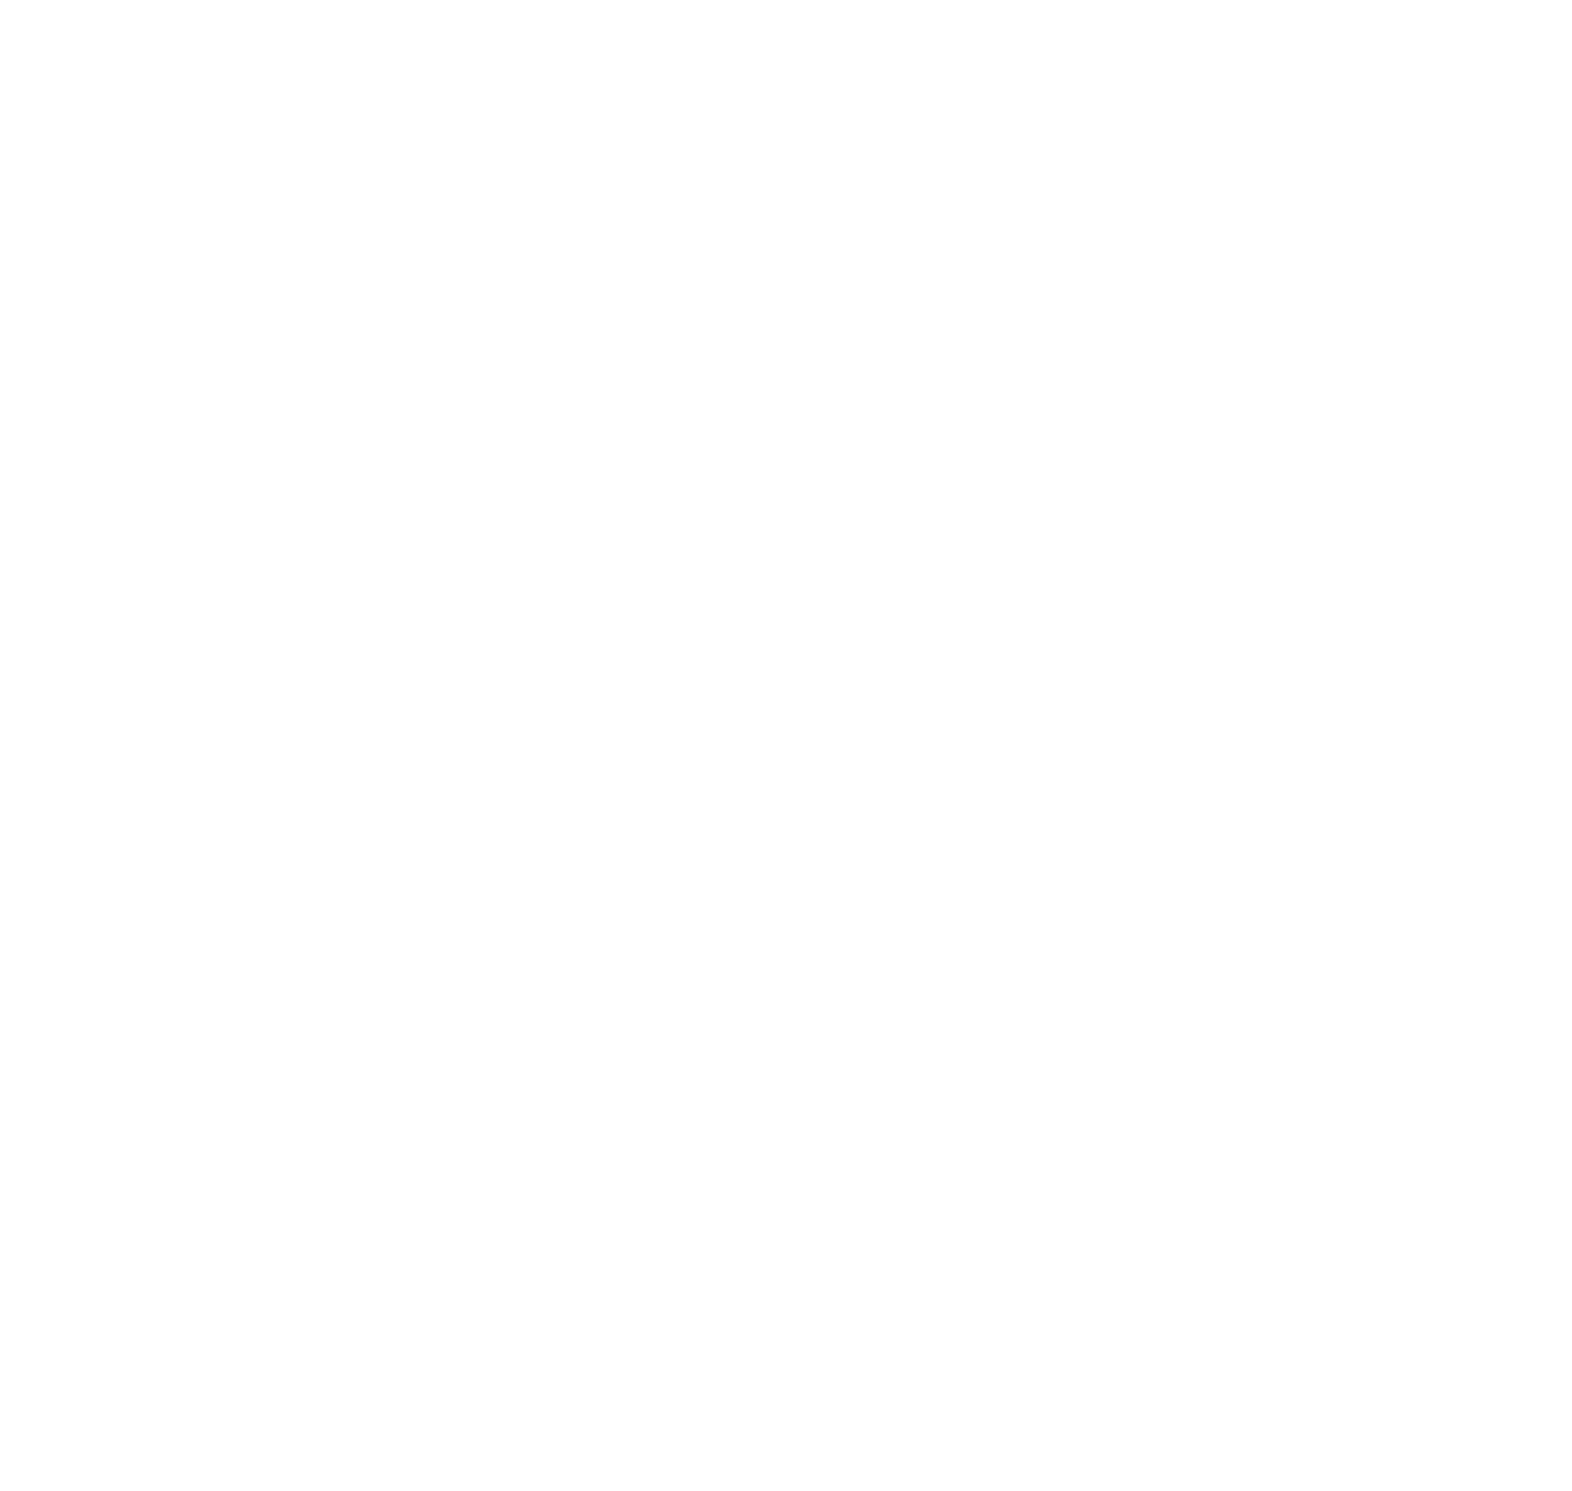 AirTAC International logo for dark backgrounds (transparent PNG)